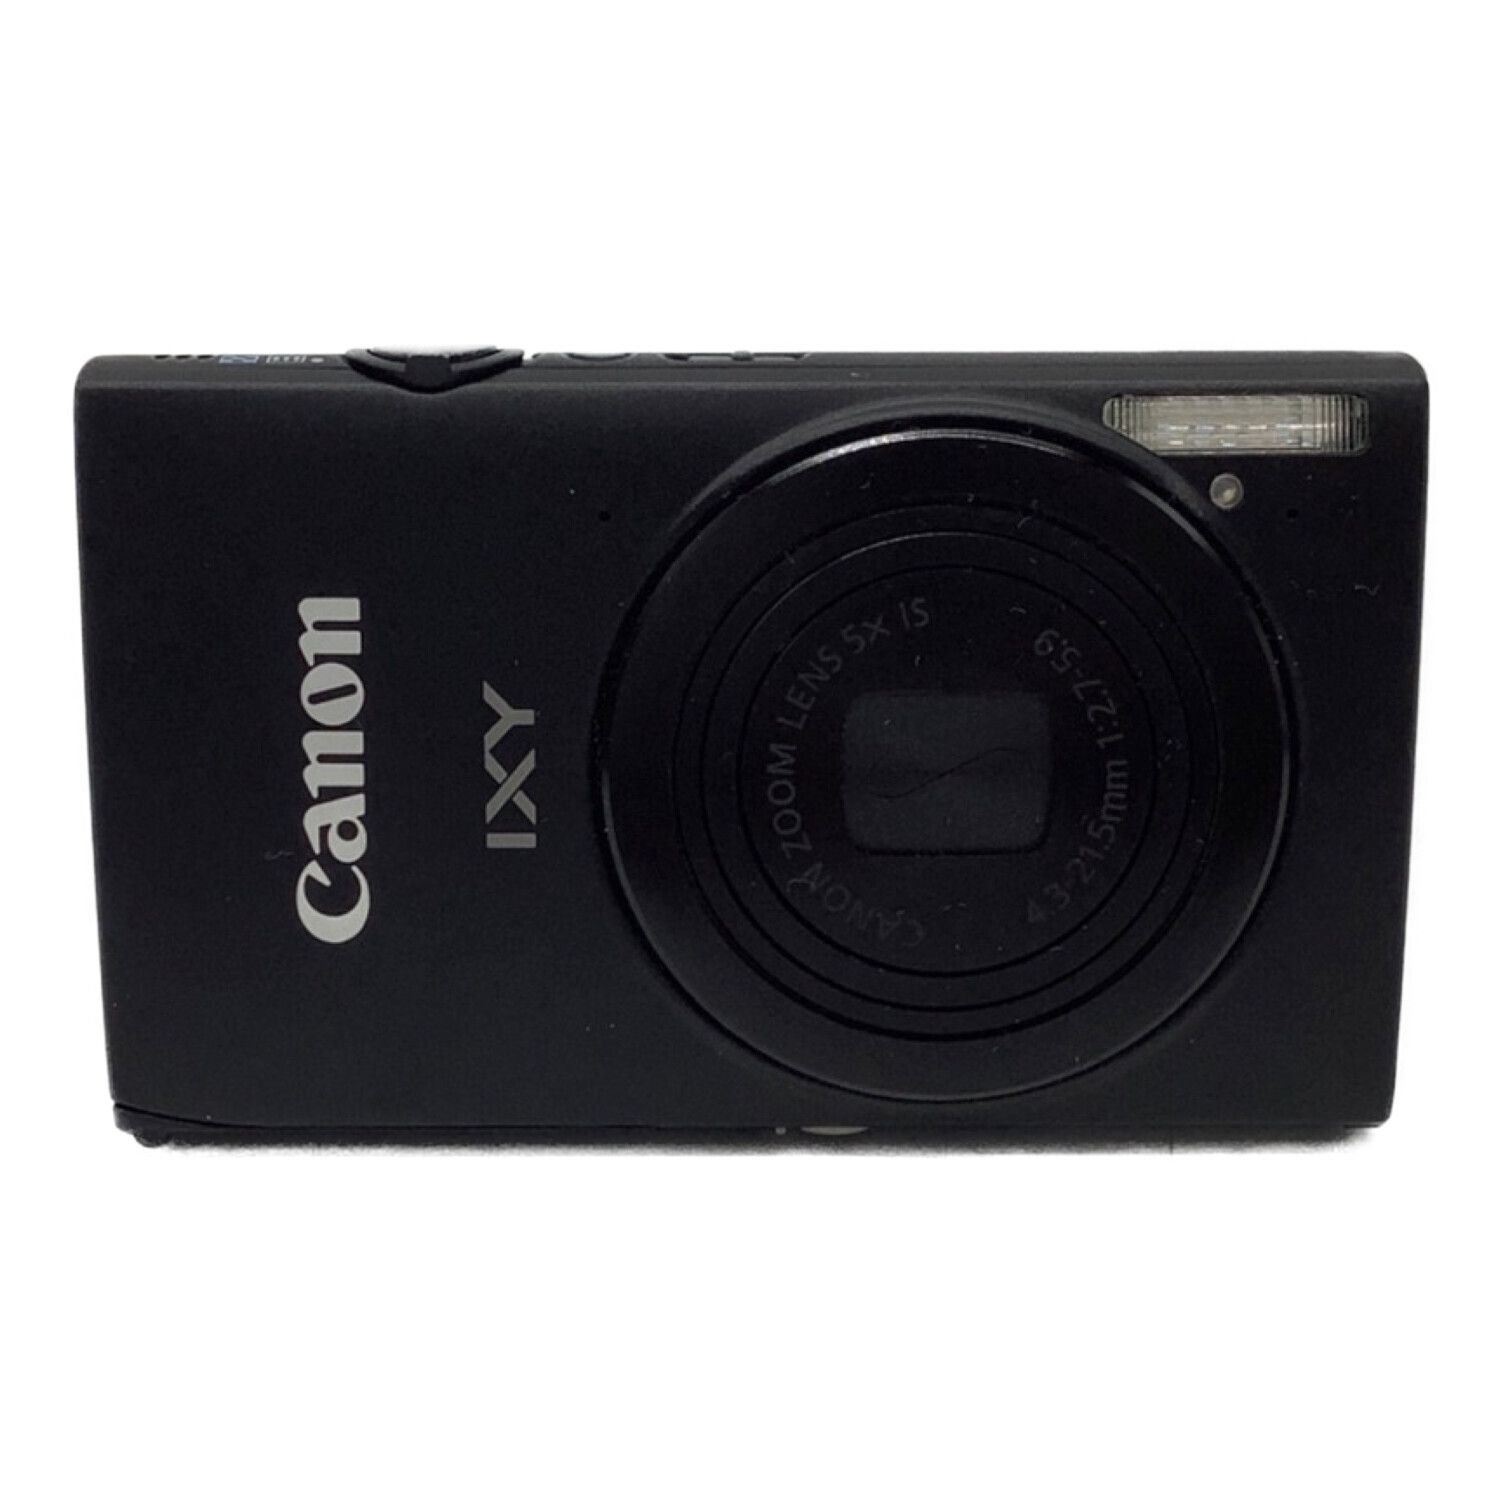 canon ixy 420f コンパクトデジタルカメラ